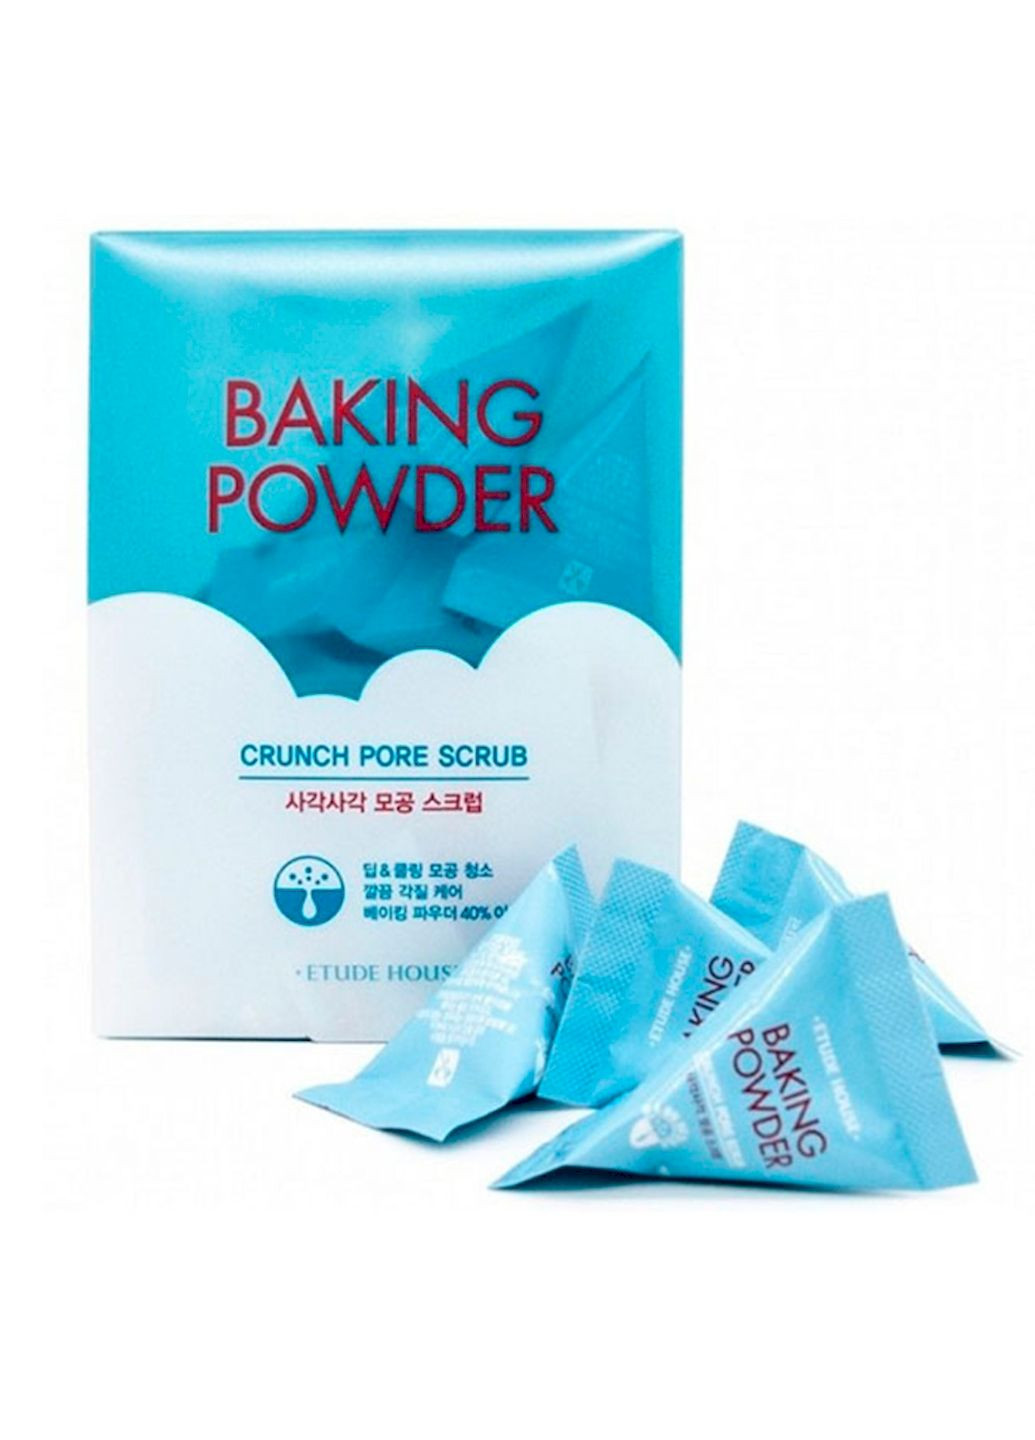 Скраб Baking Powder Crunch Pore Scrub для лица с содой упаковка 168 г Etude House (258705717)